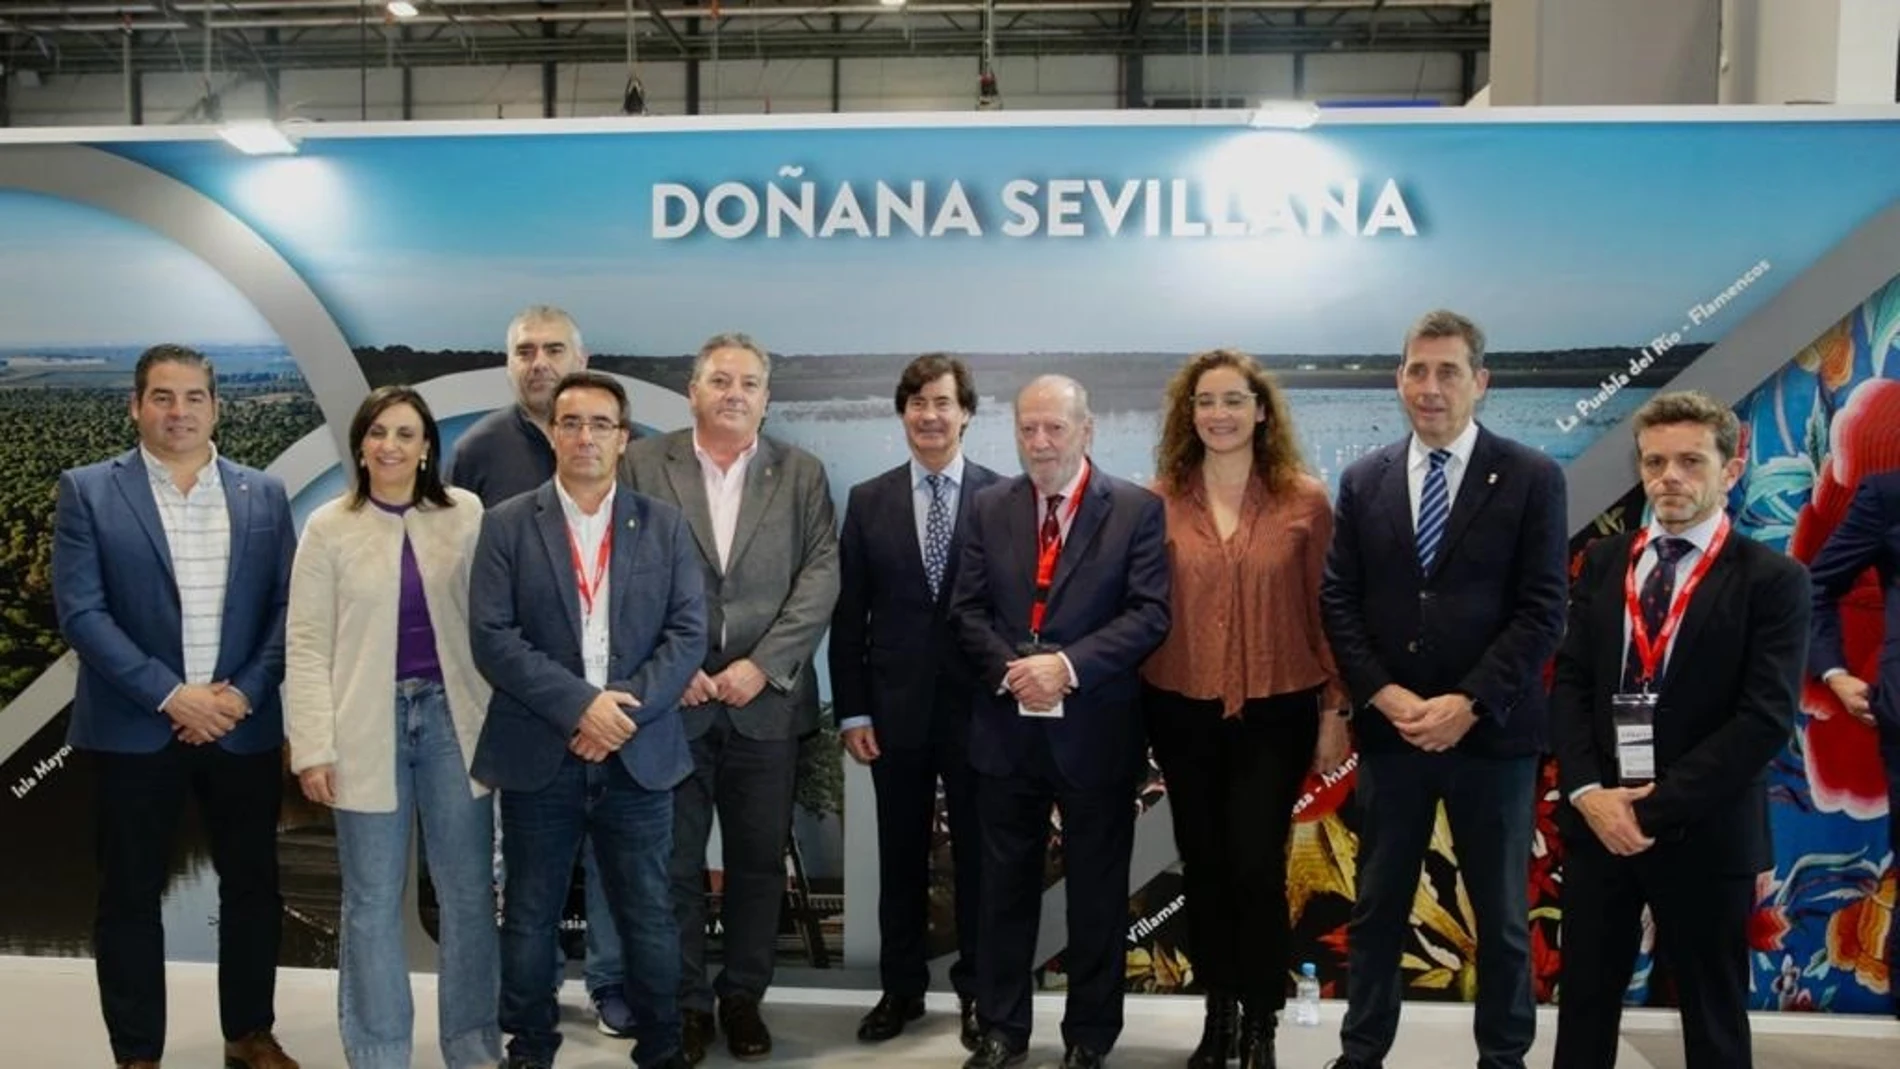 Villalobos, en el centro de la imagen, en la presentación del proyecto 'Doñana sevillana' en el stand de Sevilla en Ifema.